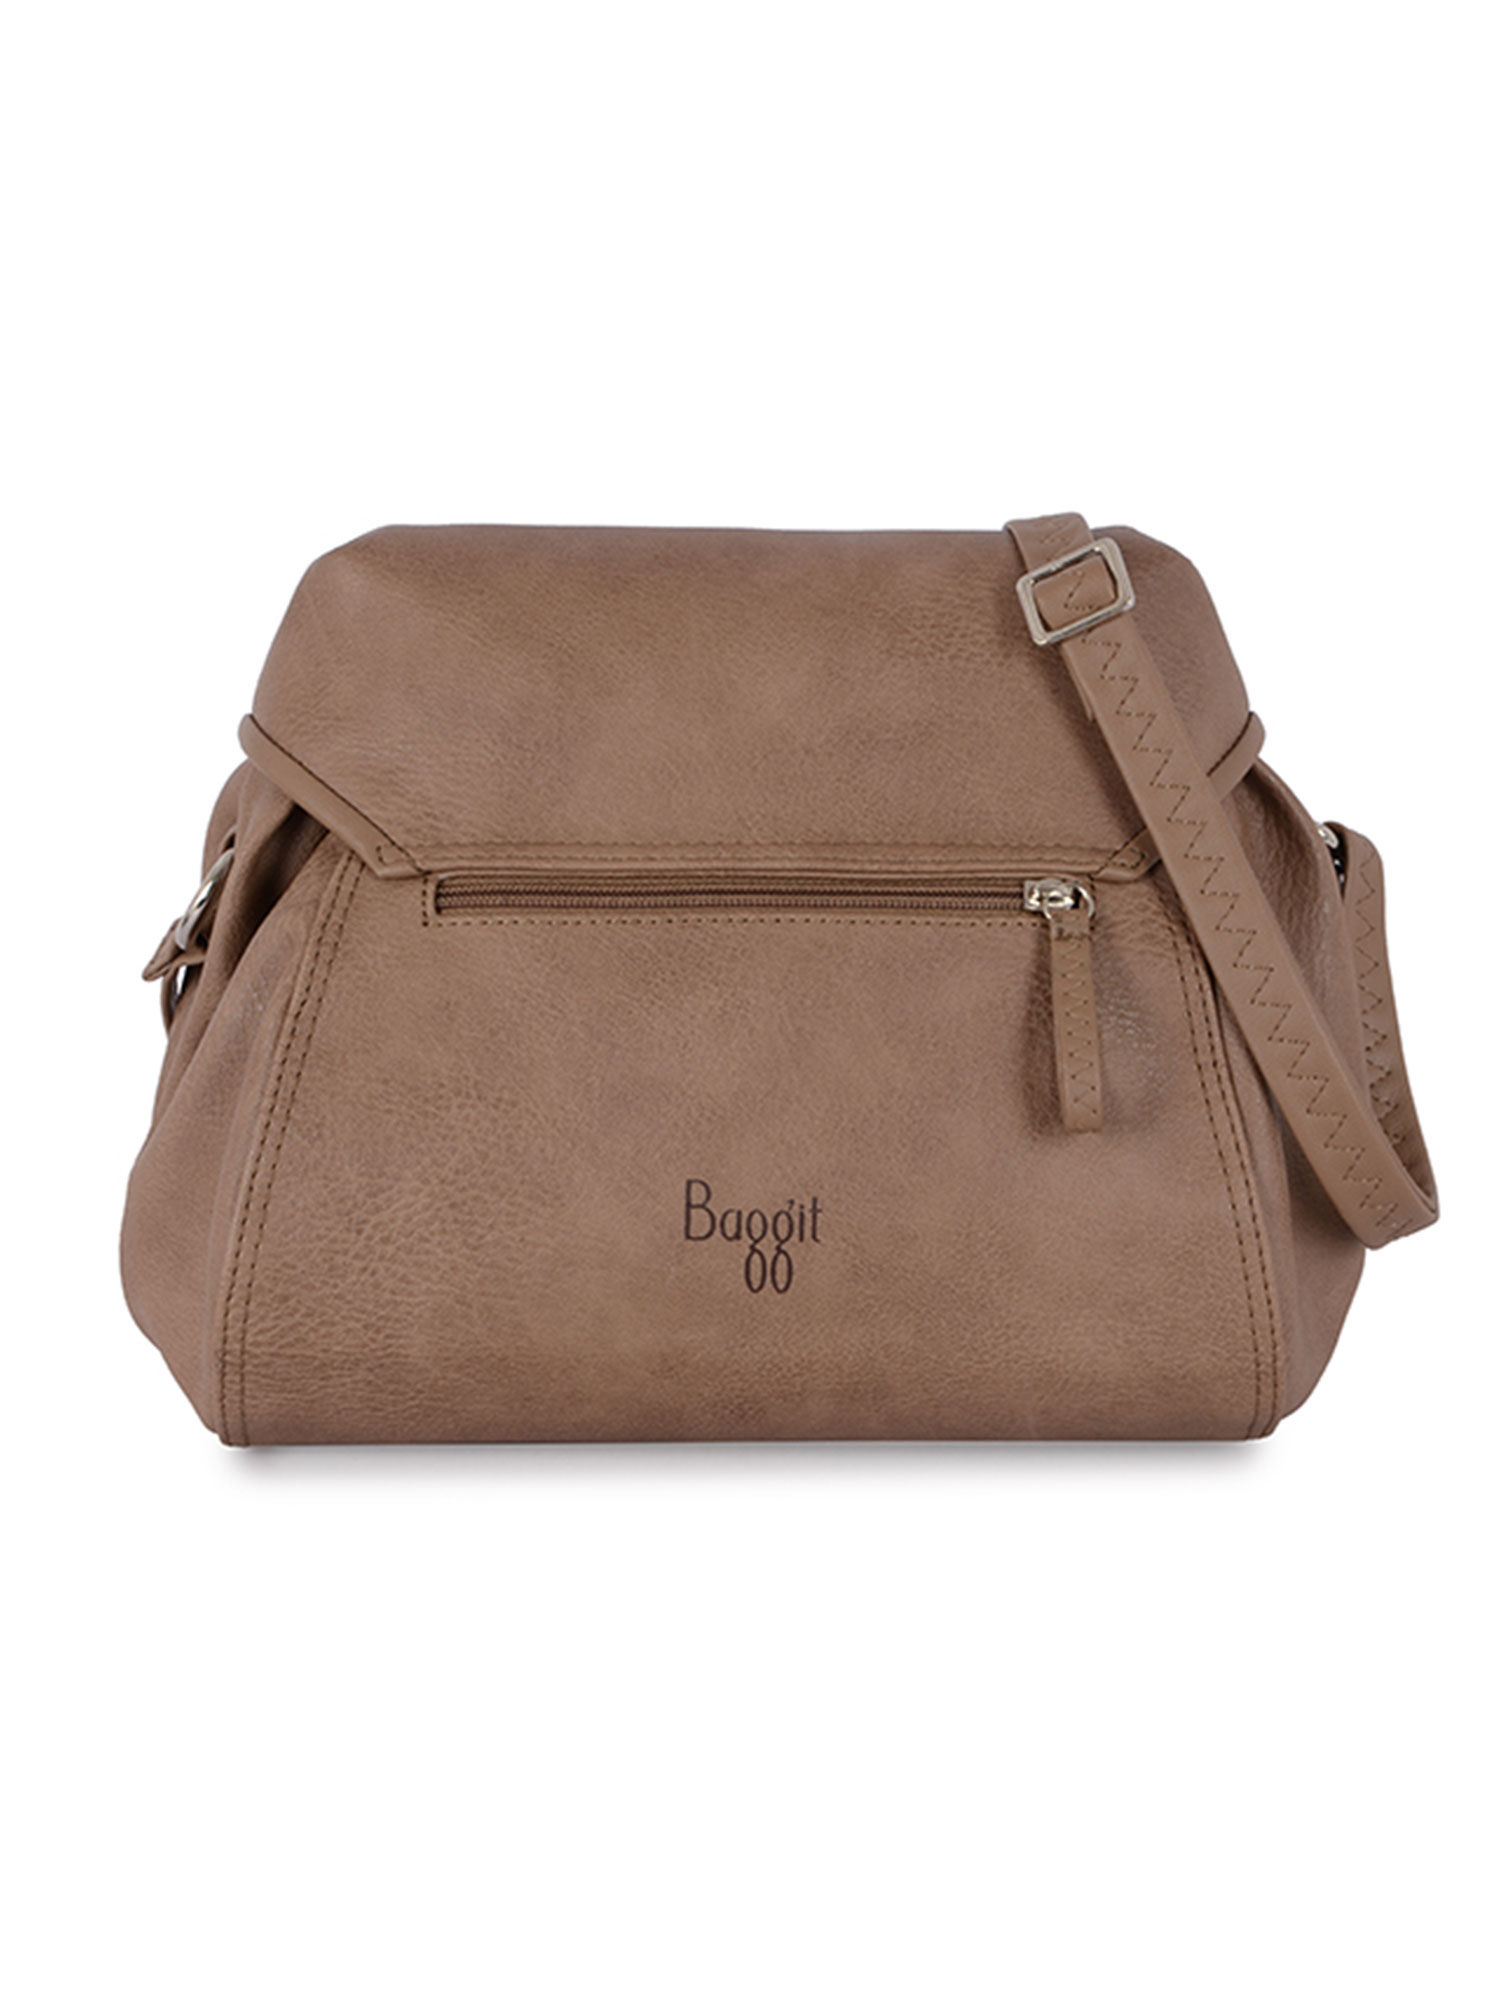 Baggit sling bag | Sling bag, Bags, Sling